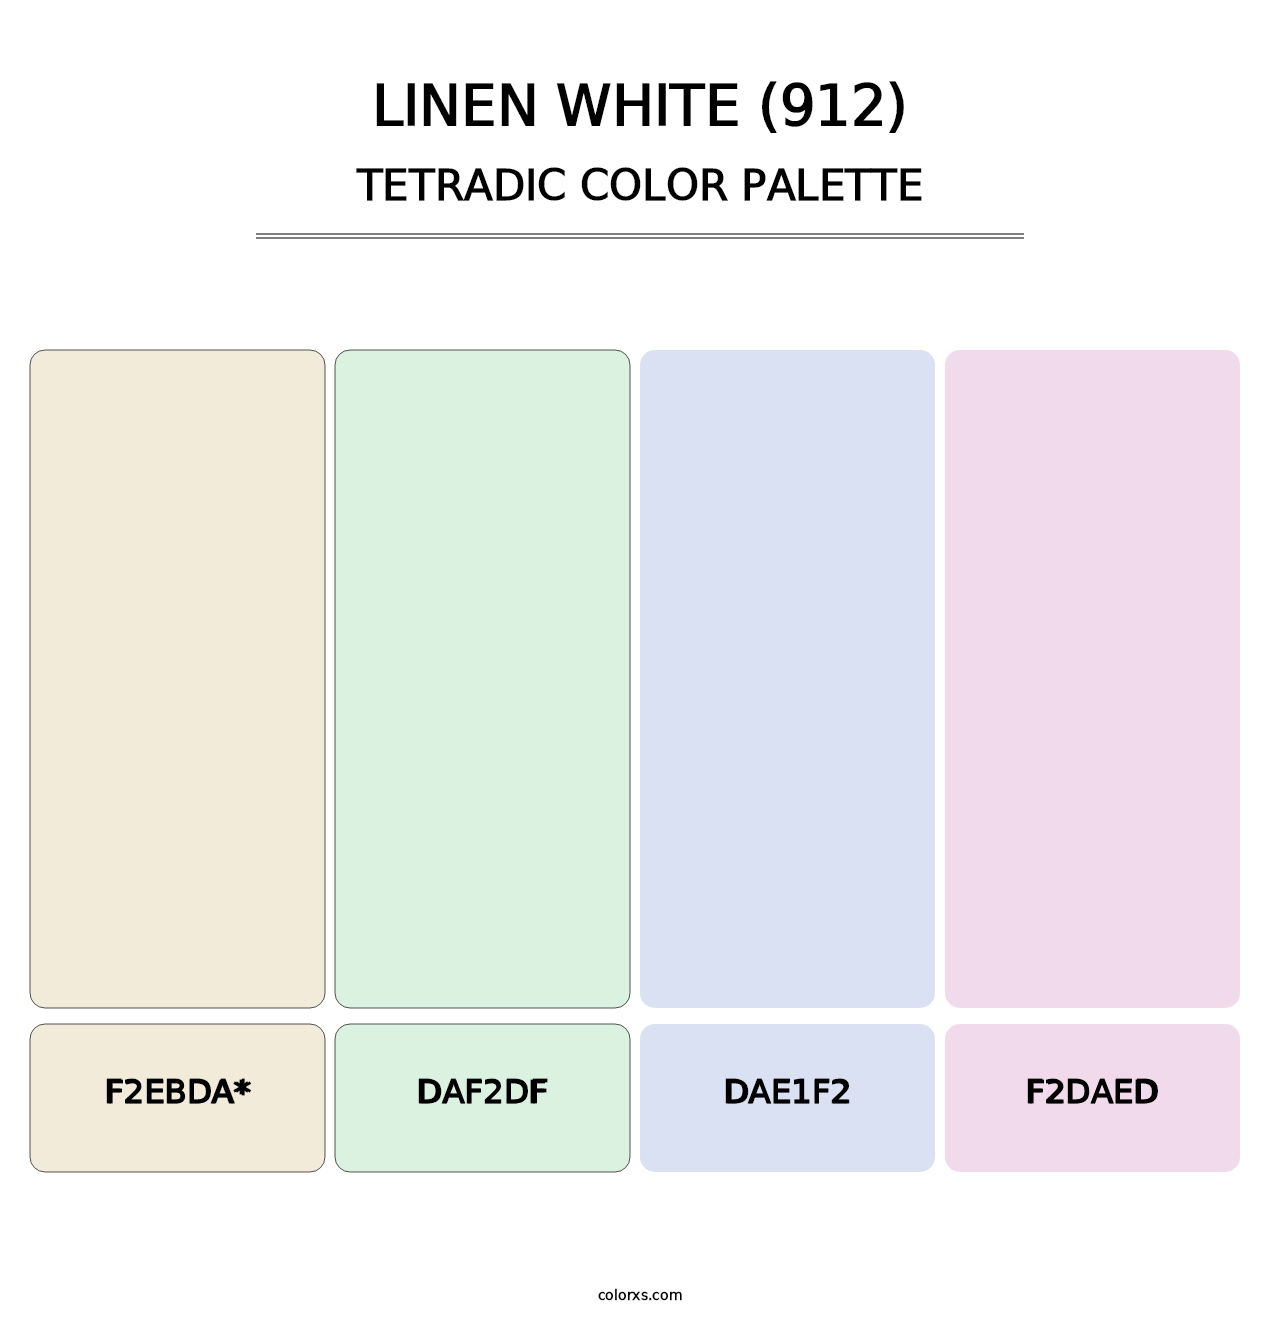 Linen White (912) - Tetradic Color Palette